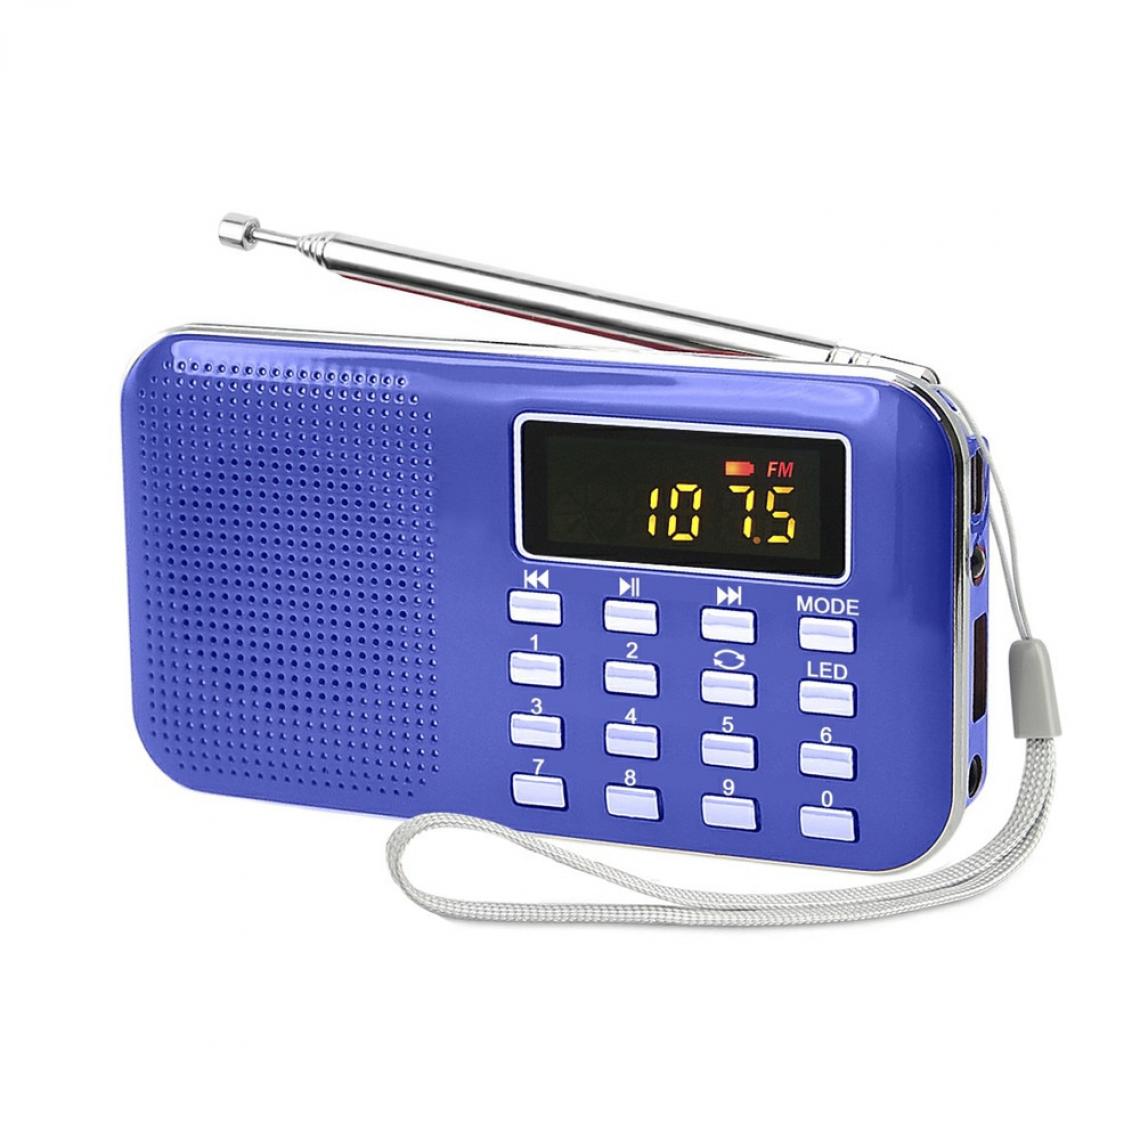 Universal - Mini radio FM portable multifonctionnel, affichage numérique, haut-parleur TF, lecteur MP3 USB, recharge(Bleu) - Radio